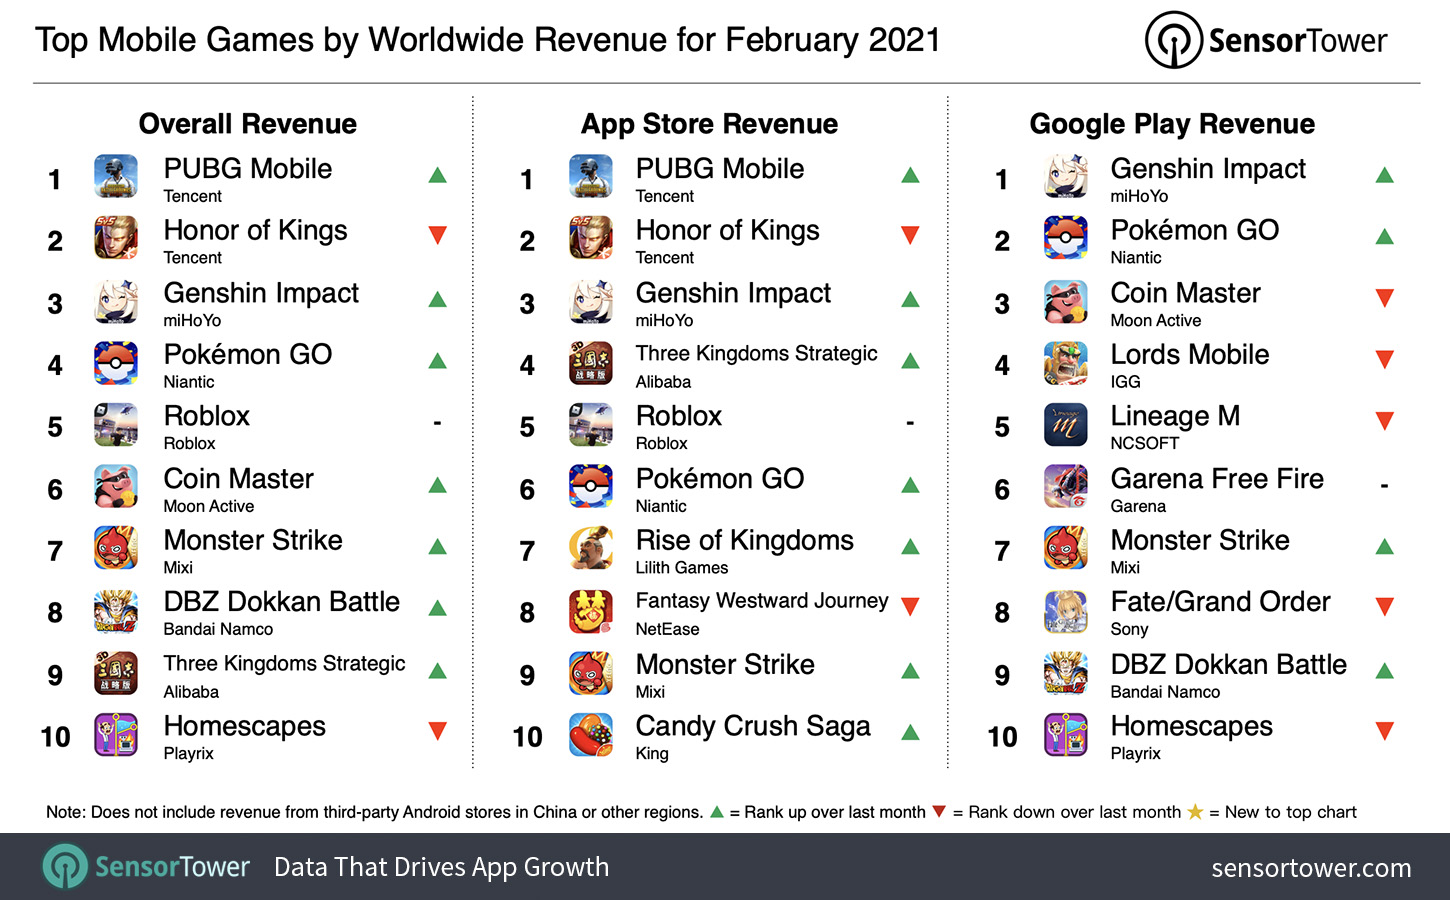 21年2月モバイルゲーム売上ランキングは Pubg Mobile が約271億円を稼ぎ首位 ドッカンバトル 6周年でtop10復帰 Sensor Tower調査 Social Game Info